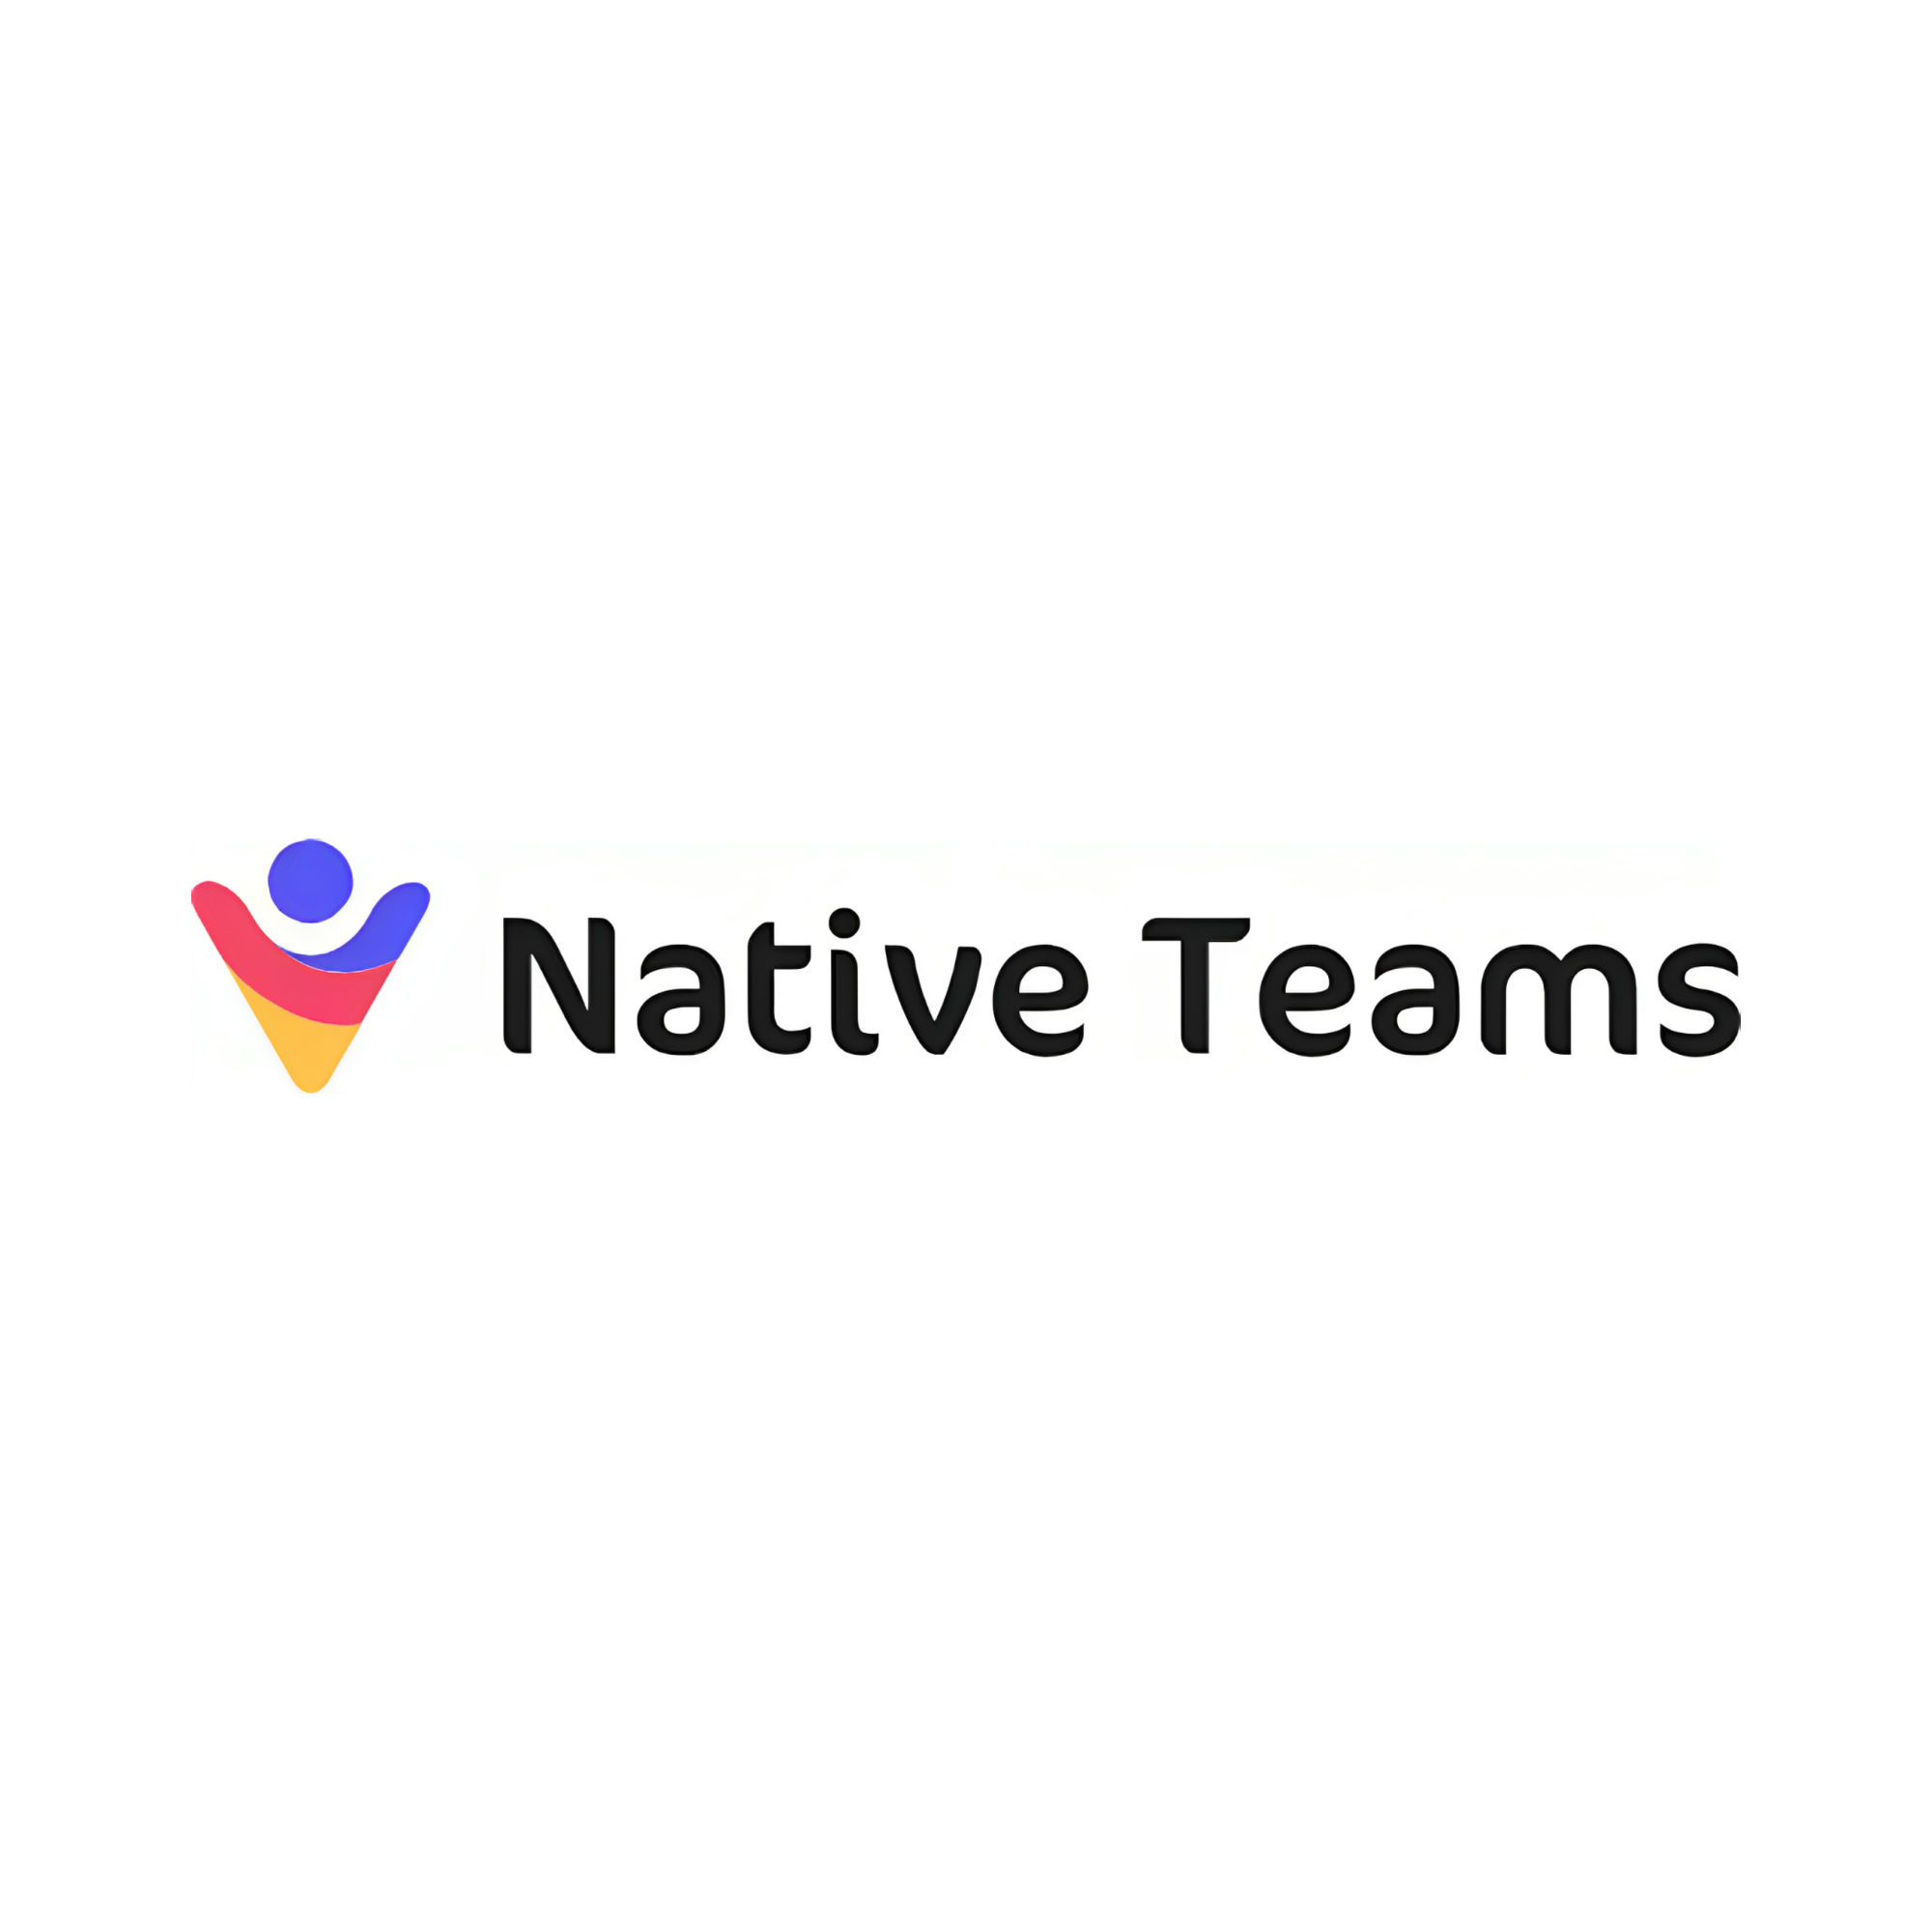 Native Teams